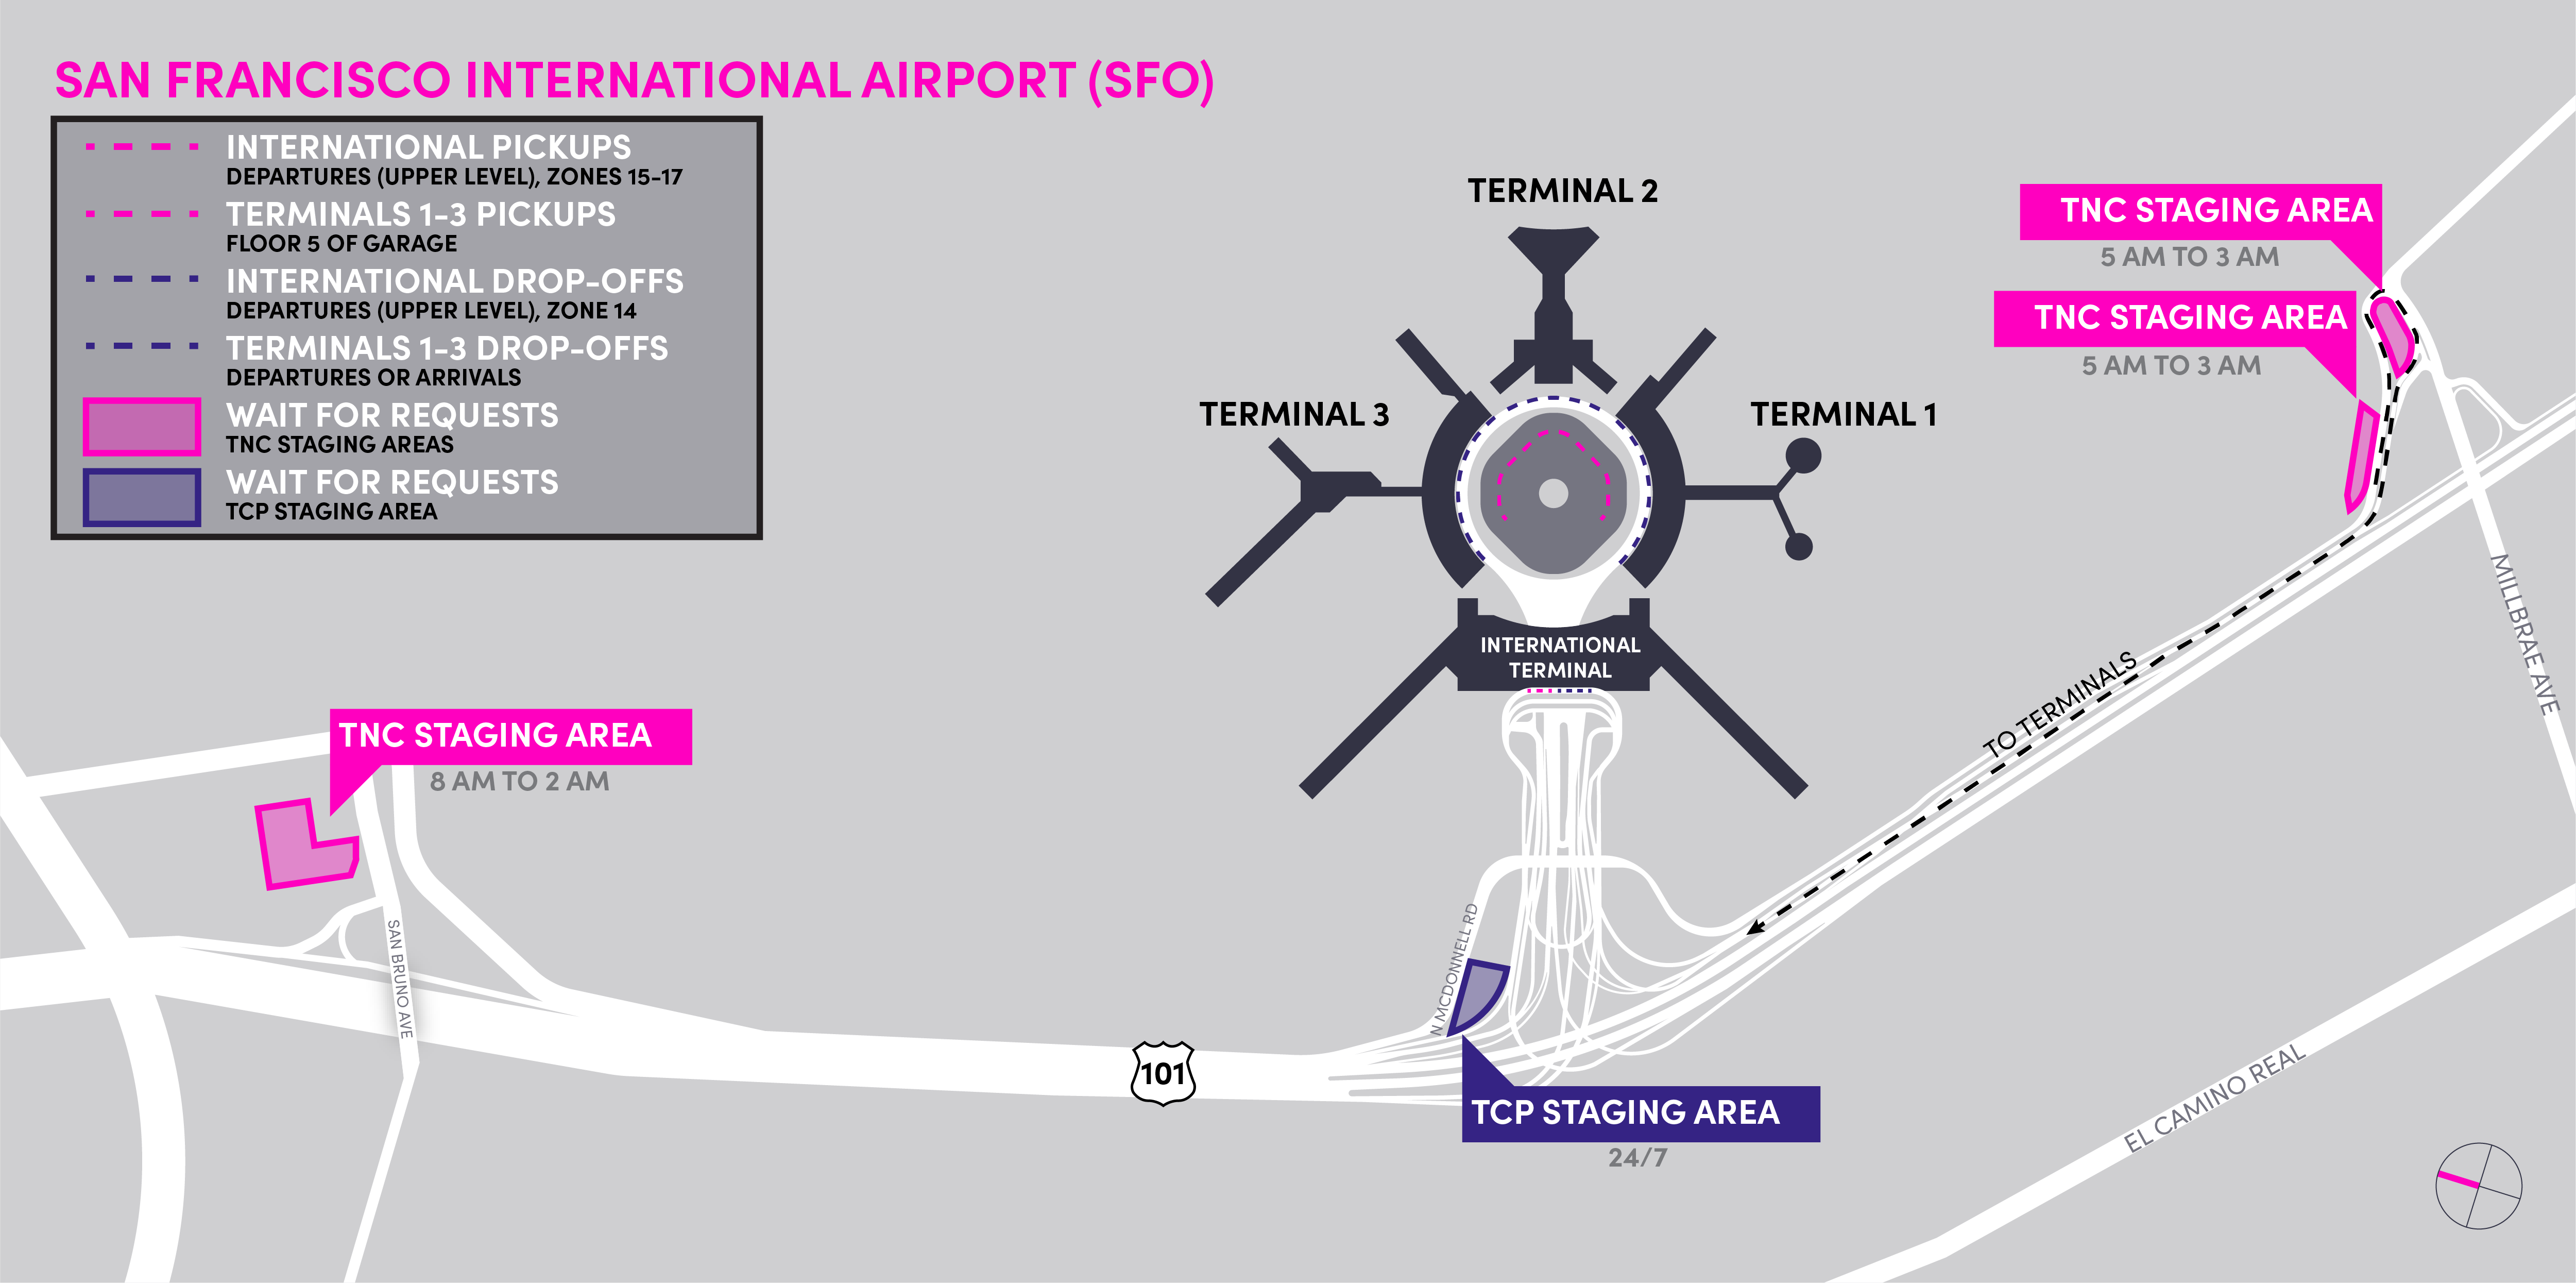 Mapa de las áreas de espera TNC y TCP en el Aeropuerto Internacional de San Francisco